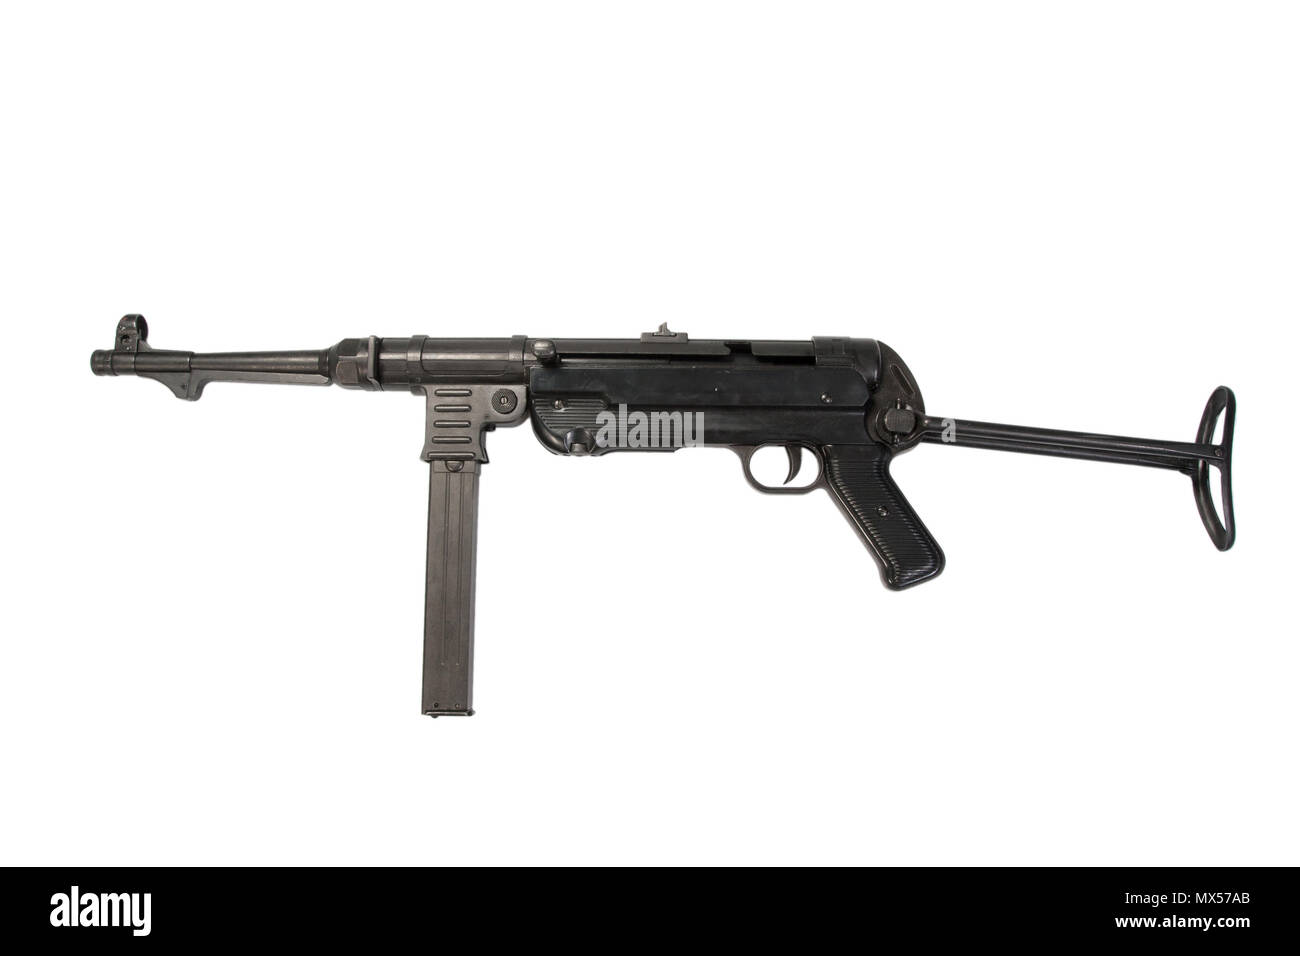 MP40 submachine gun on white background Stock Photo